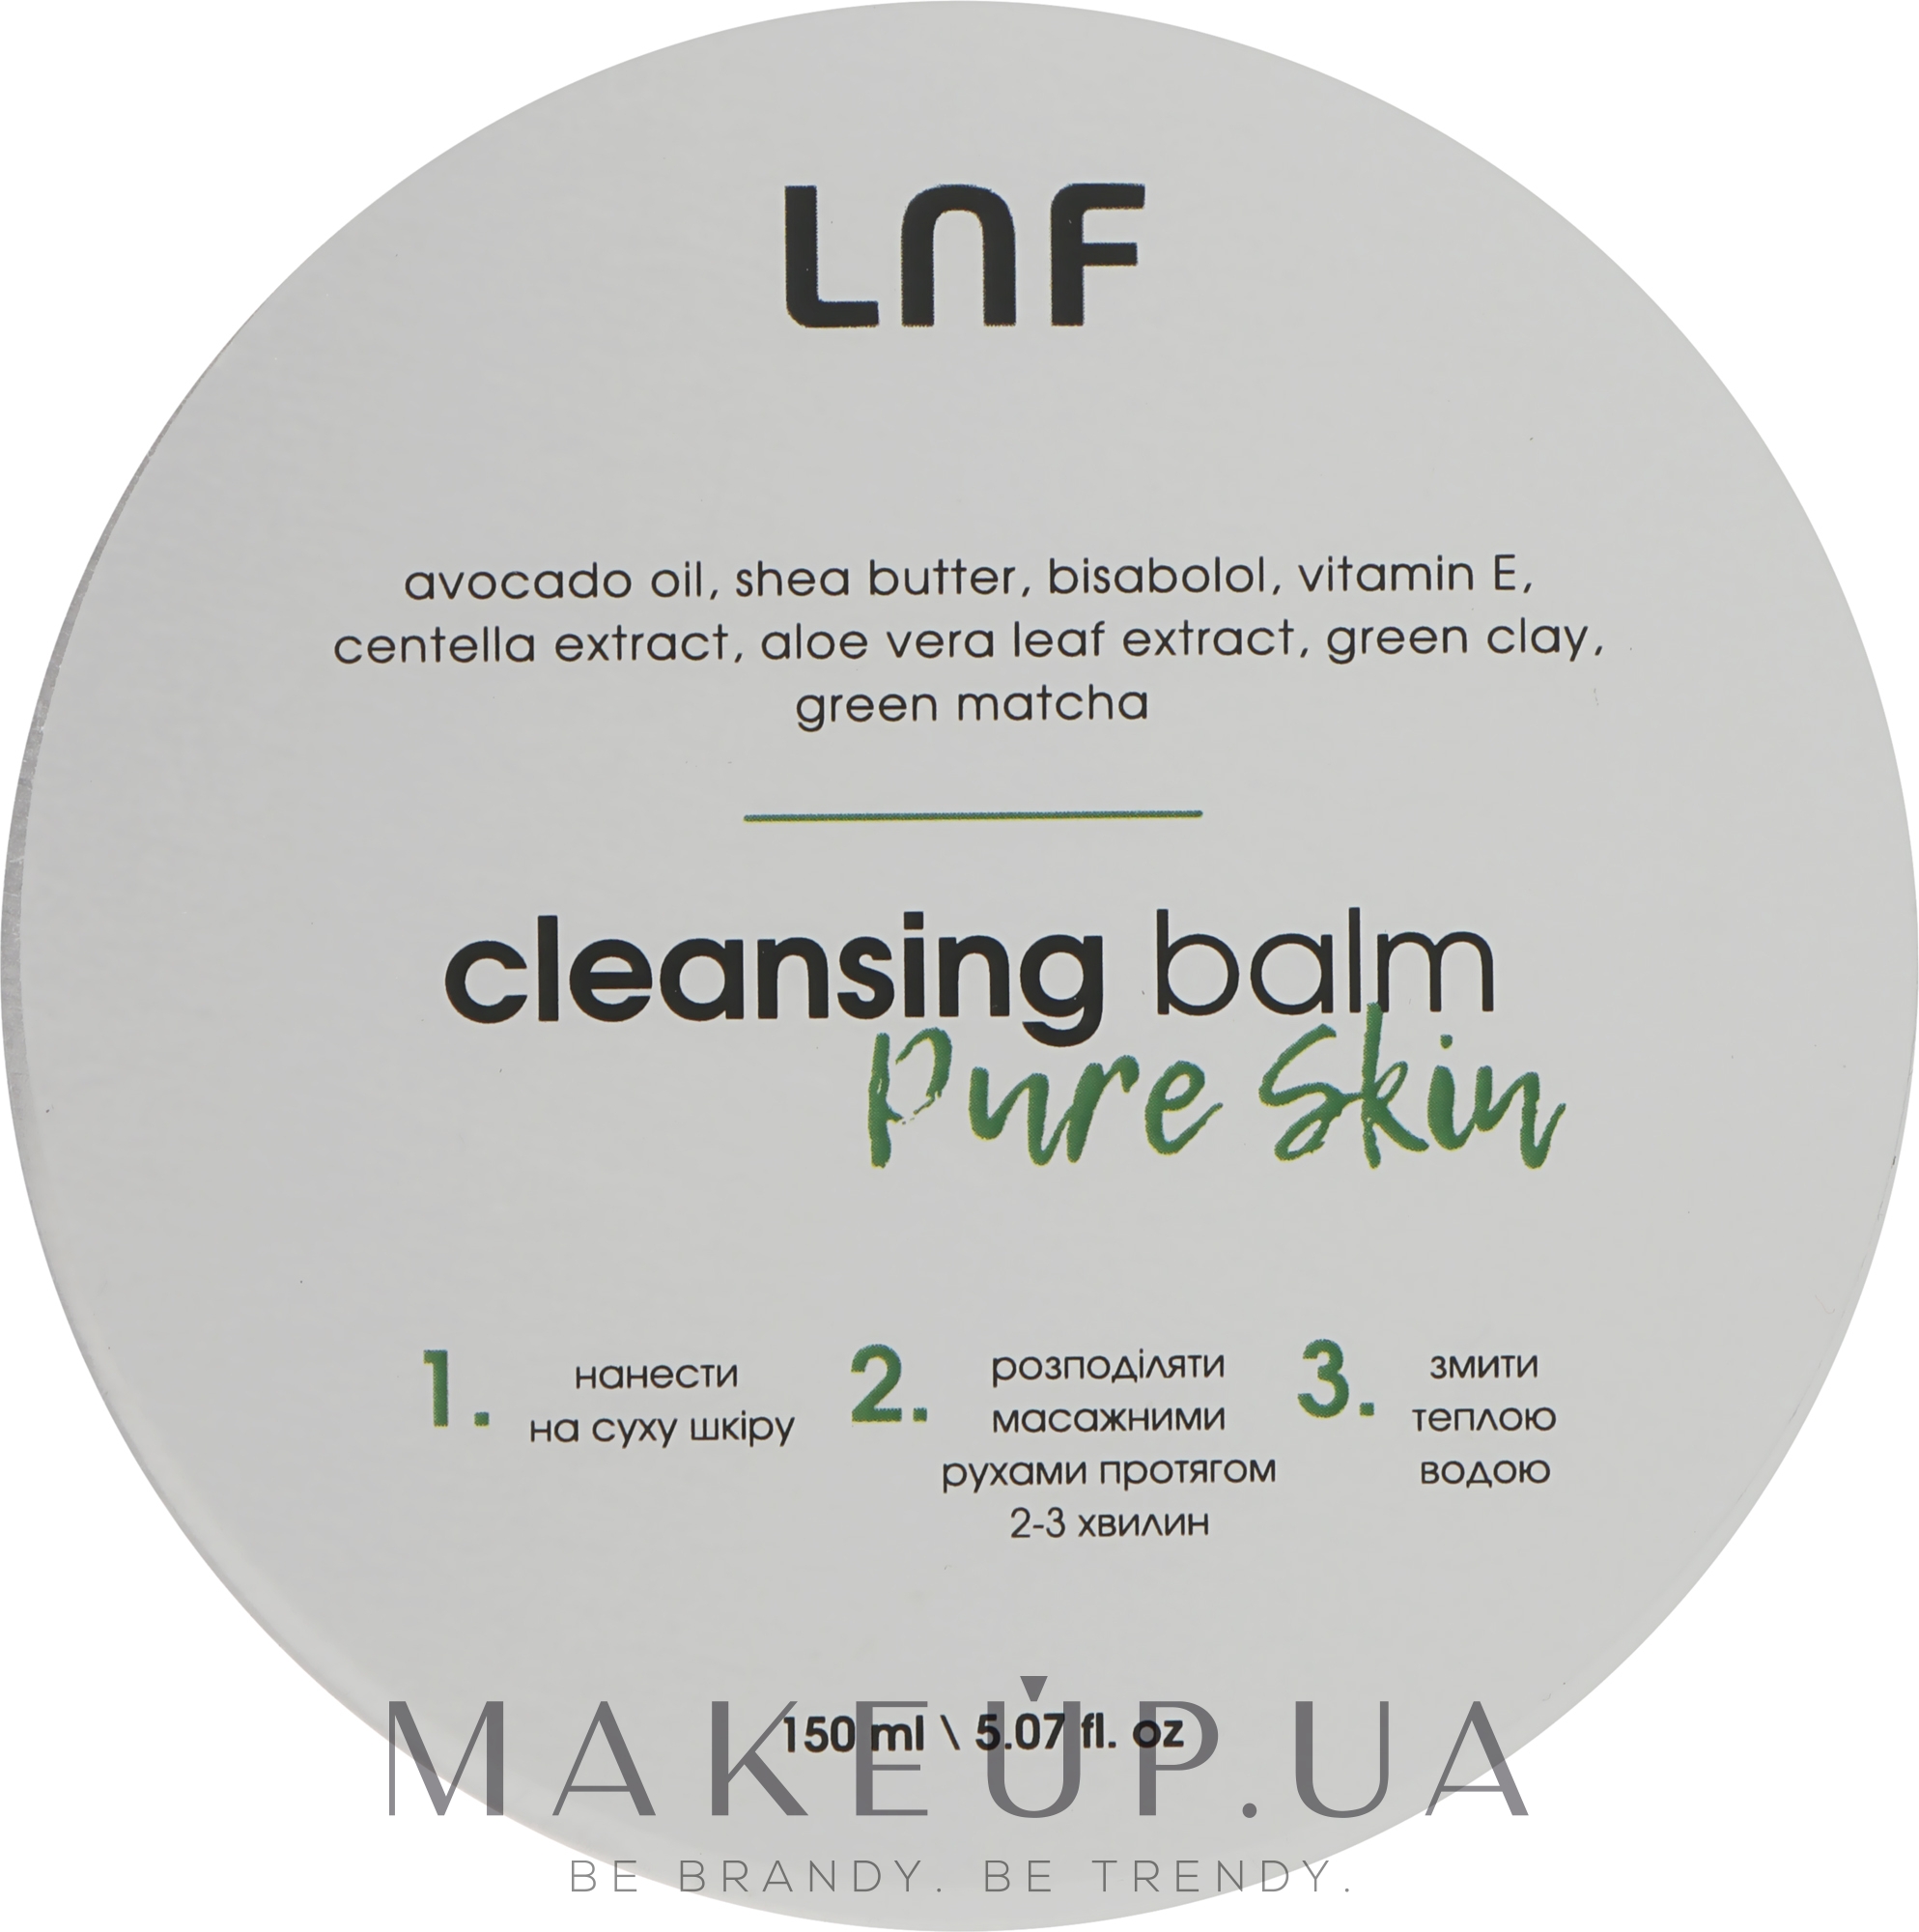 Бальзам для очищення пор з матчею й зеленою глиною - Luff Cleansing Balm Pure Skin — фото 150ml